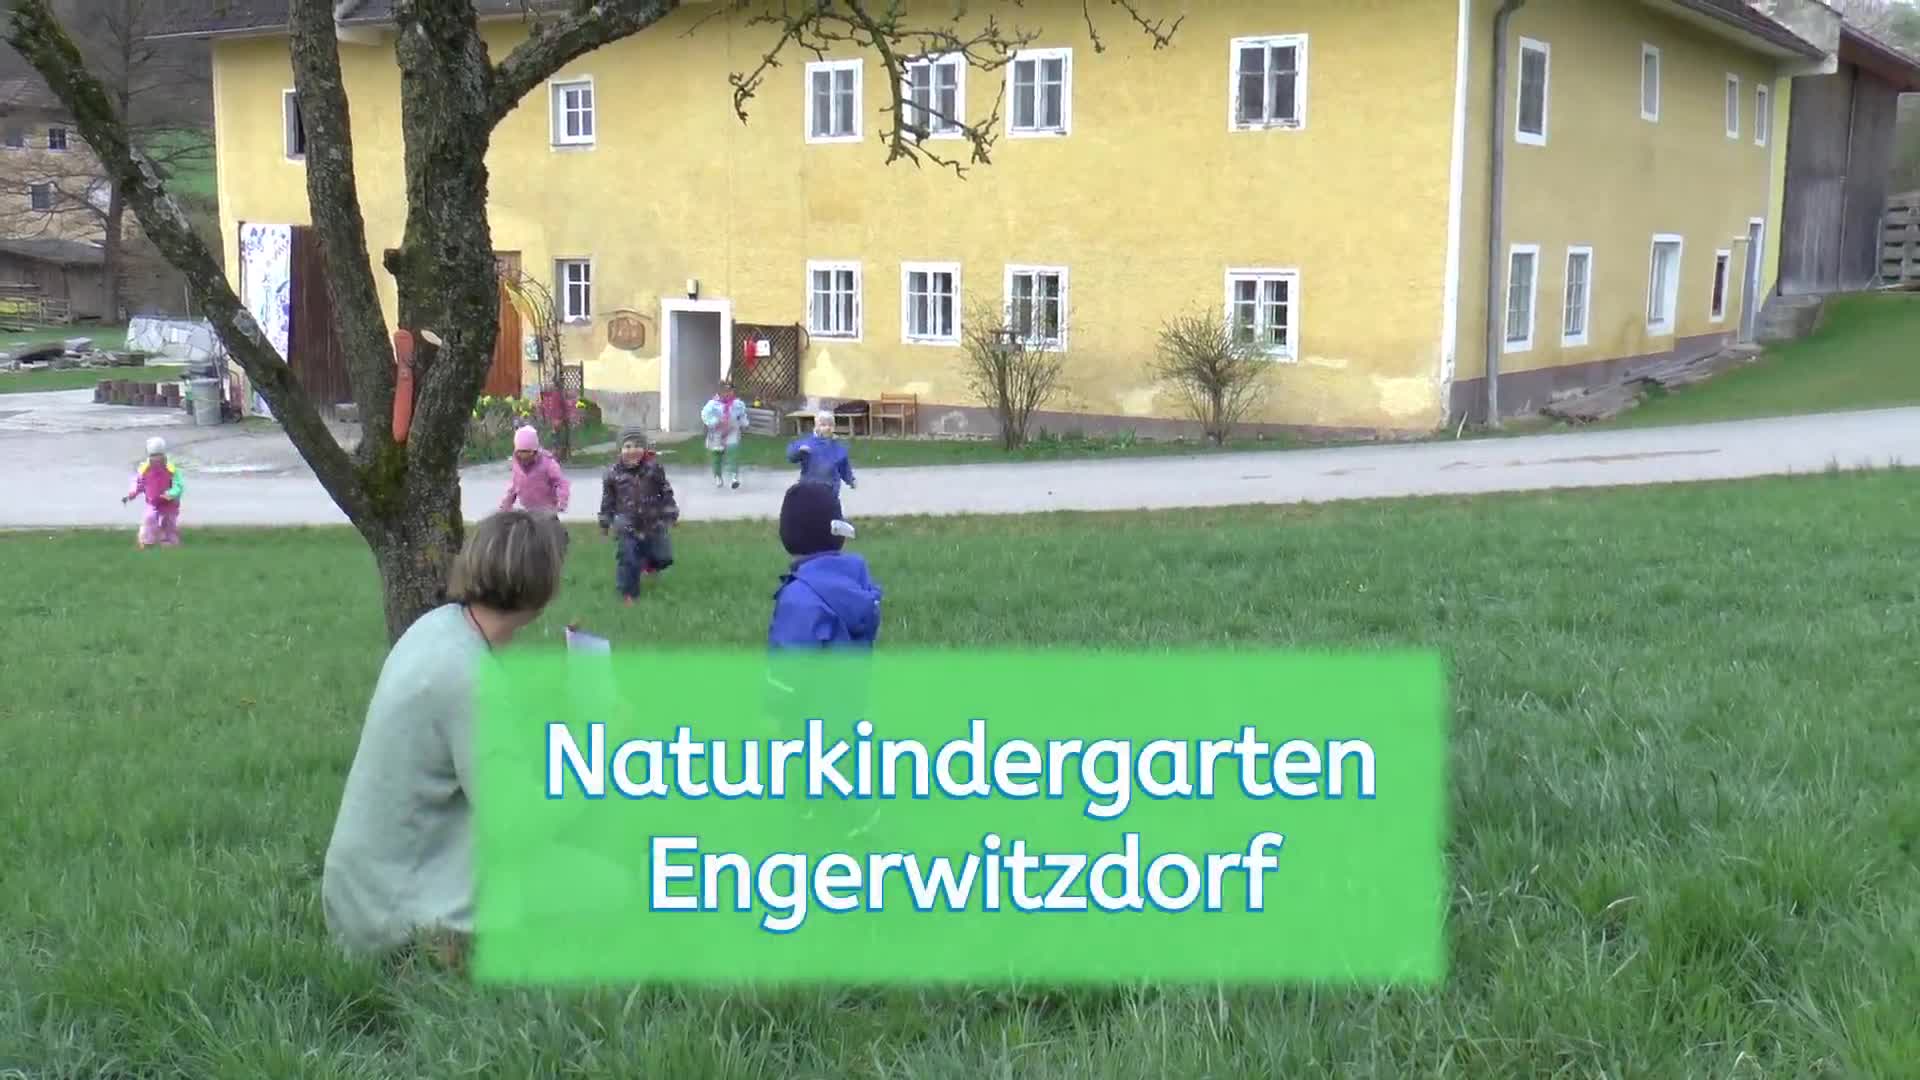 Naturkindergarten Engerwitzdorf